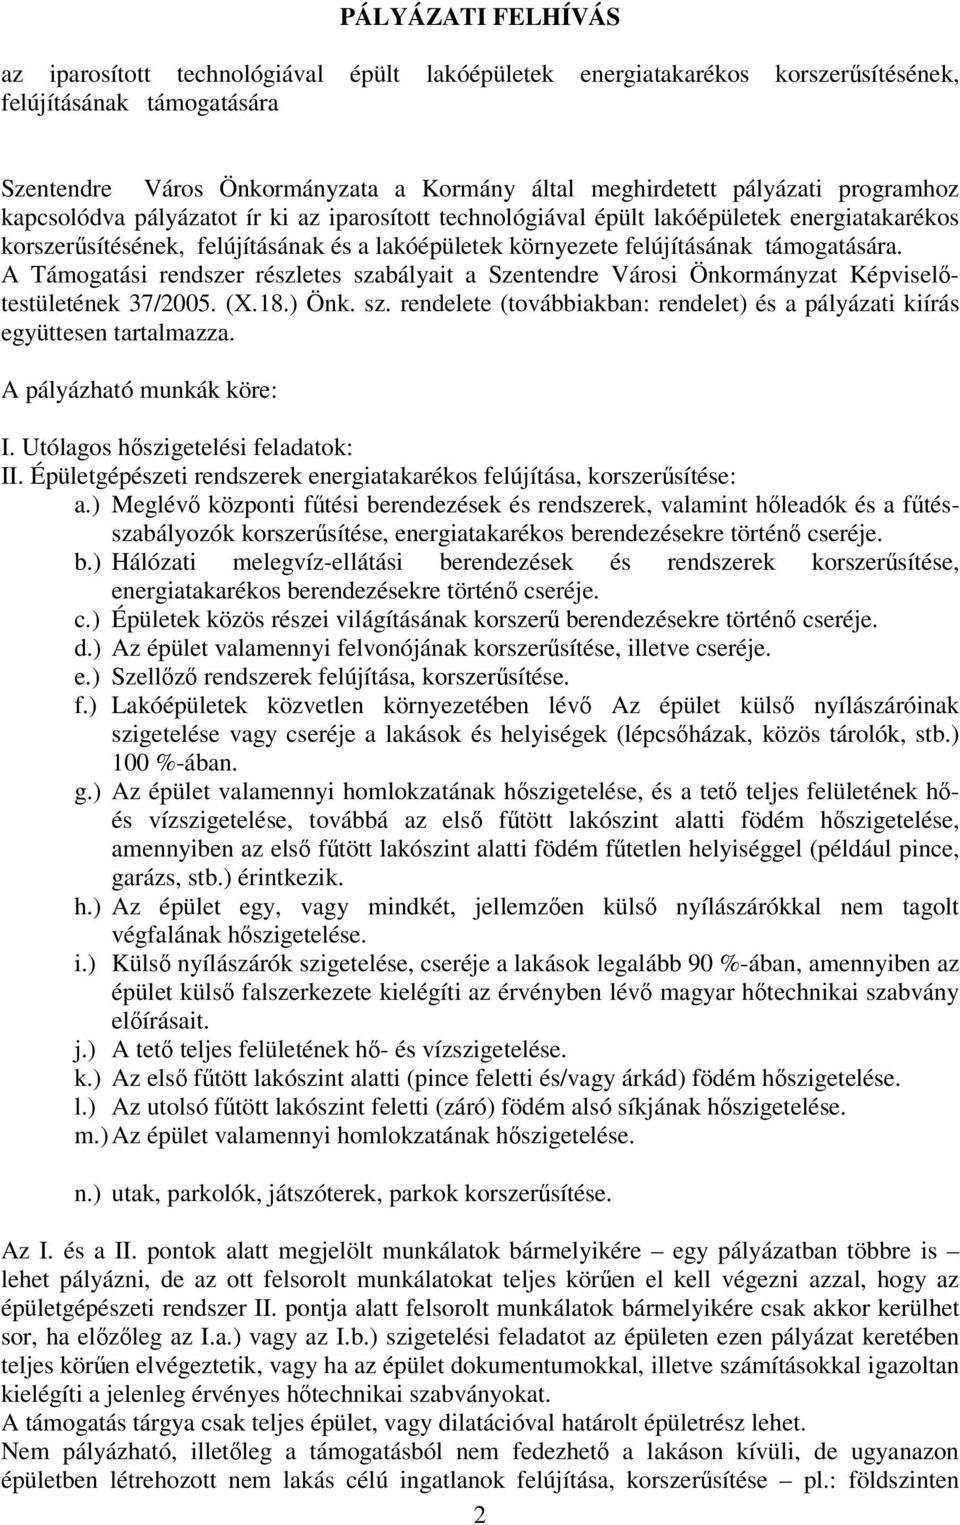 A Támogatási rendszer részletes szabályait a Szentendre Városi Önkormányzat Képviseltestületének 37/2005. (X.18.) Önk. sz. rendelete (továbbiakban: rendelet) és a pályázati kiírás együttesen tartalmazza.